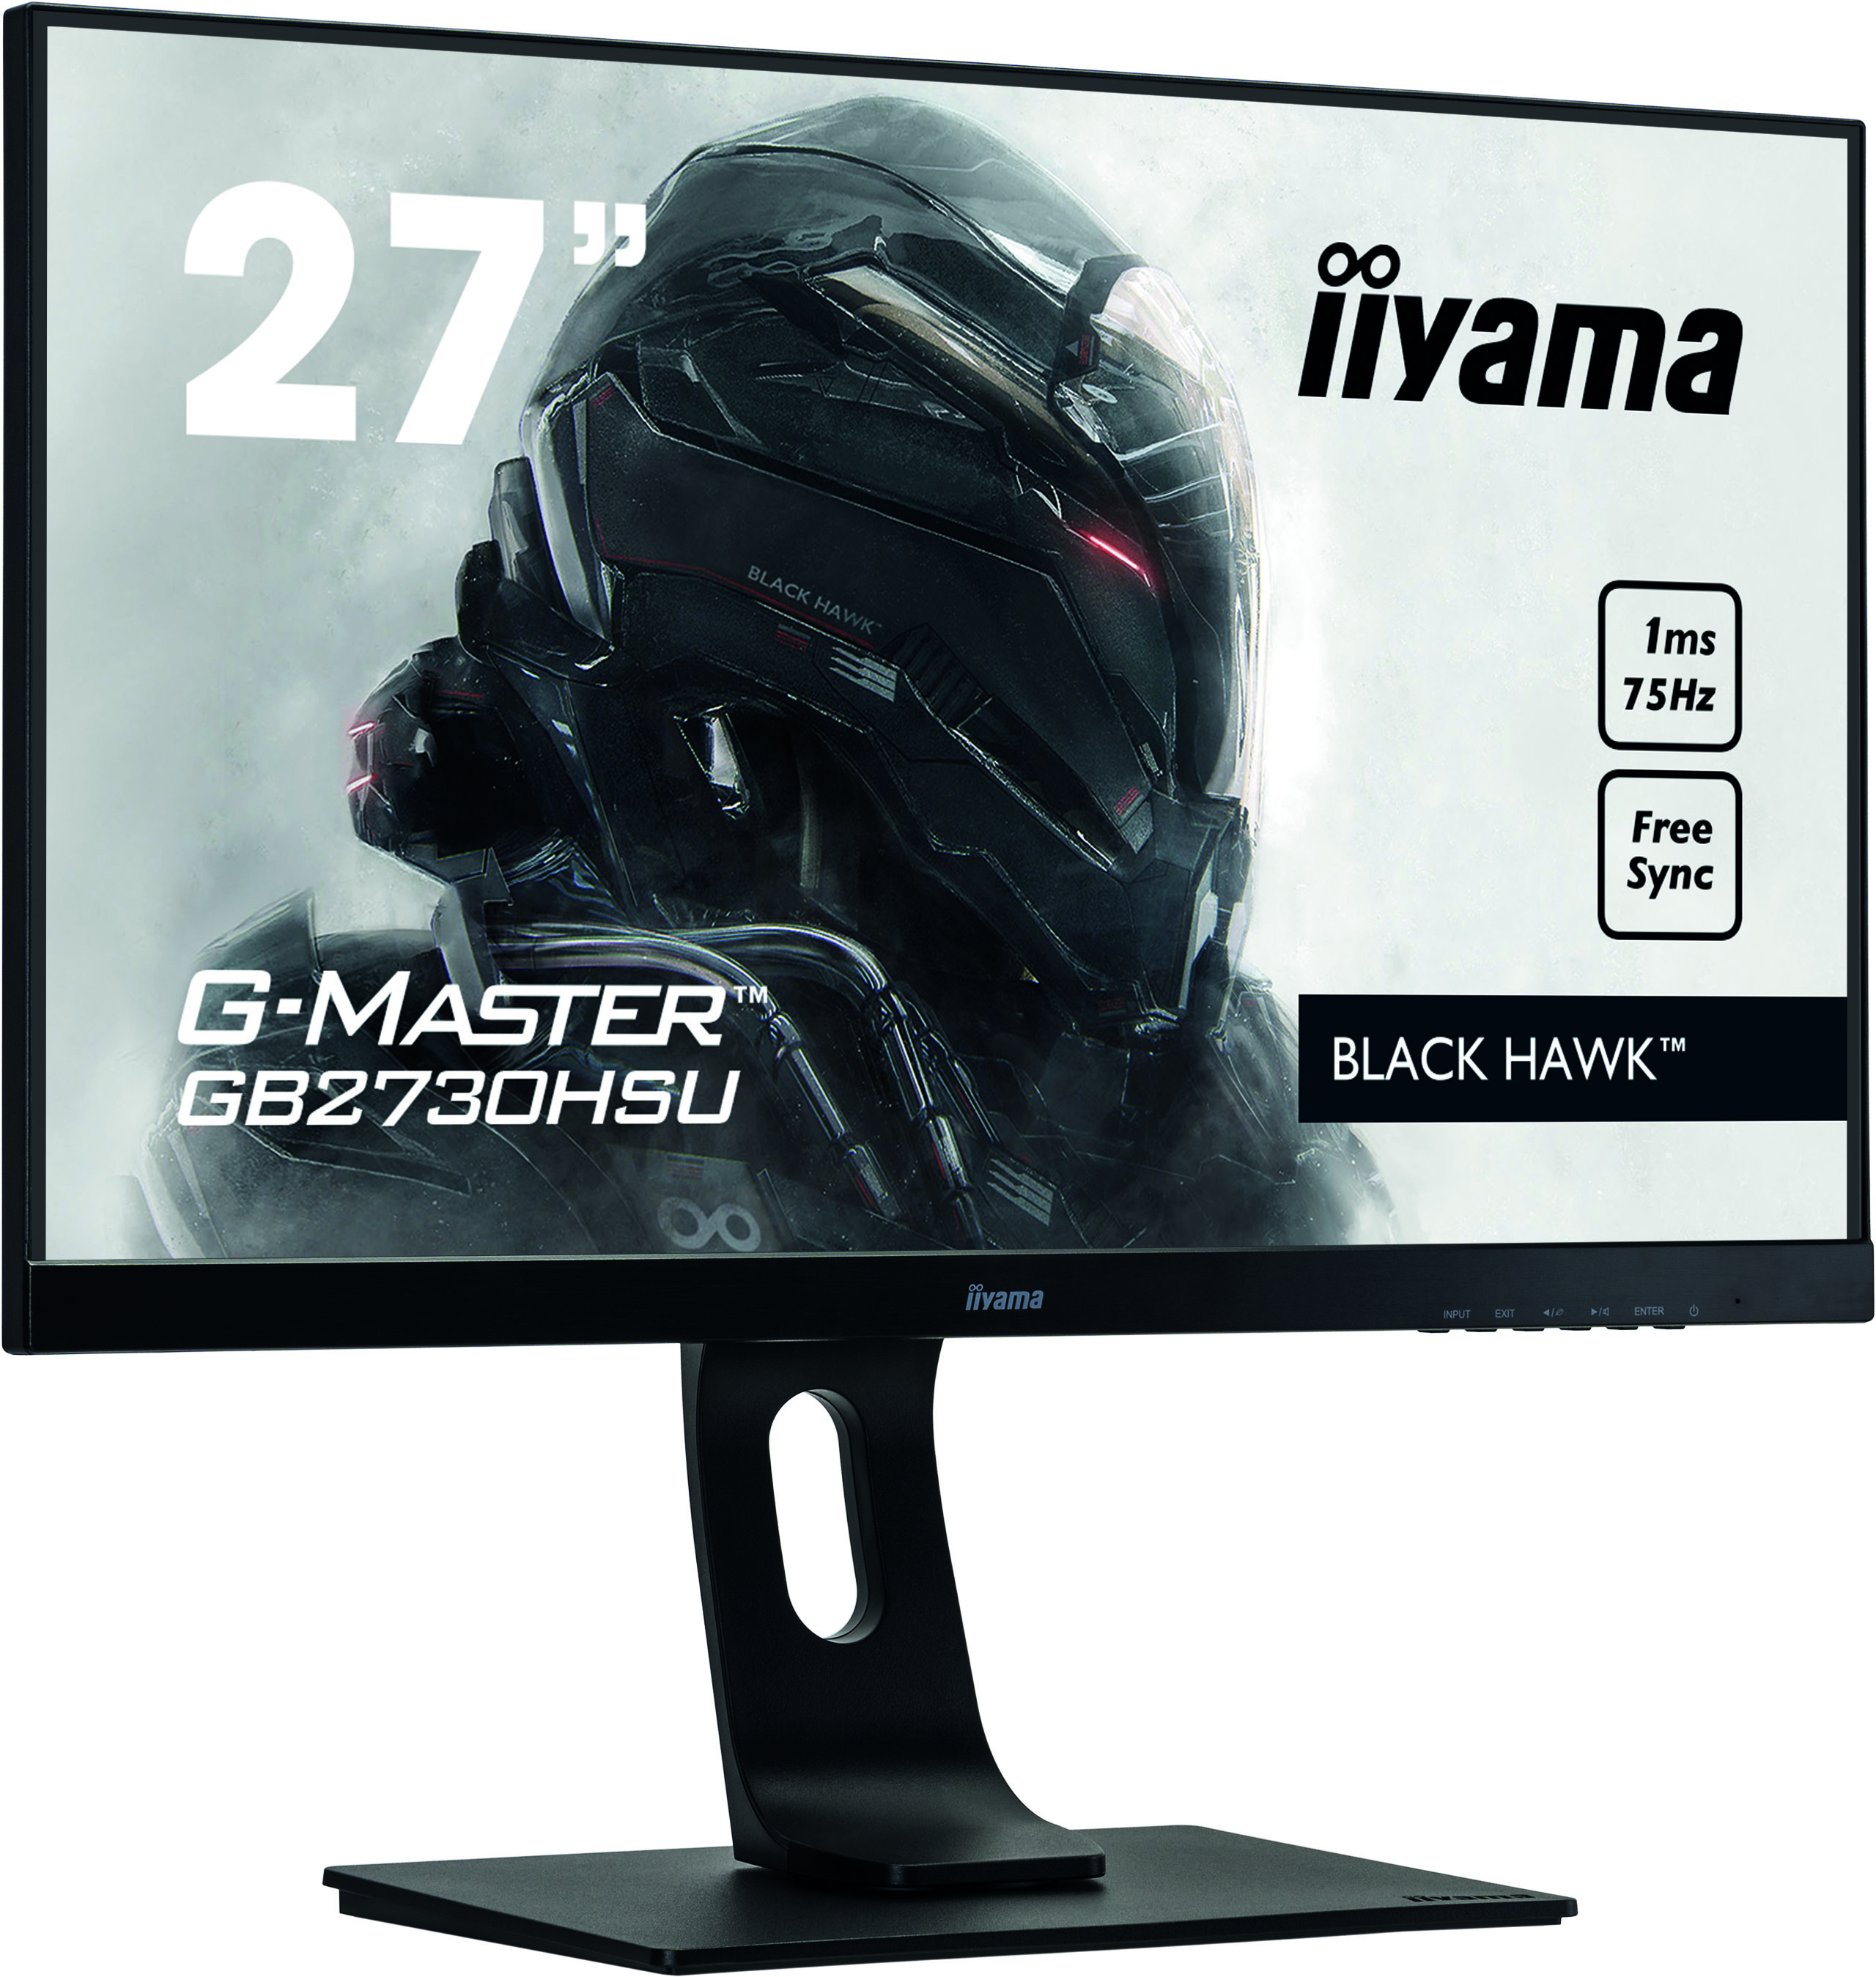 Iiyama G-MASTER GB2730HSU-B1 BLACK HAWK  | 27" | 1920 x 1080 @75Hz (2.1 megapixel Full HD, HDMI&DisplayPort) | Gaming Monitor